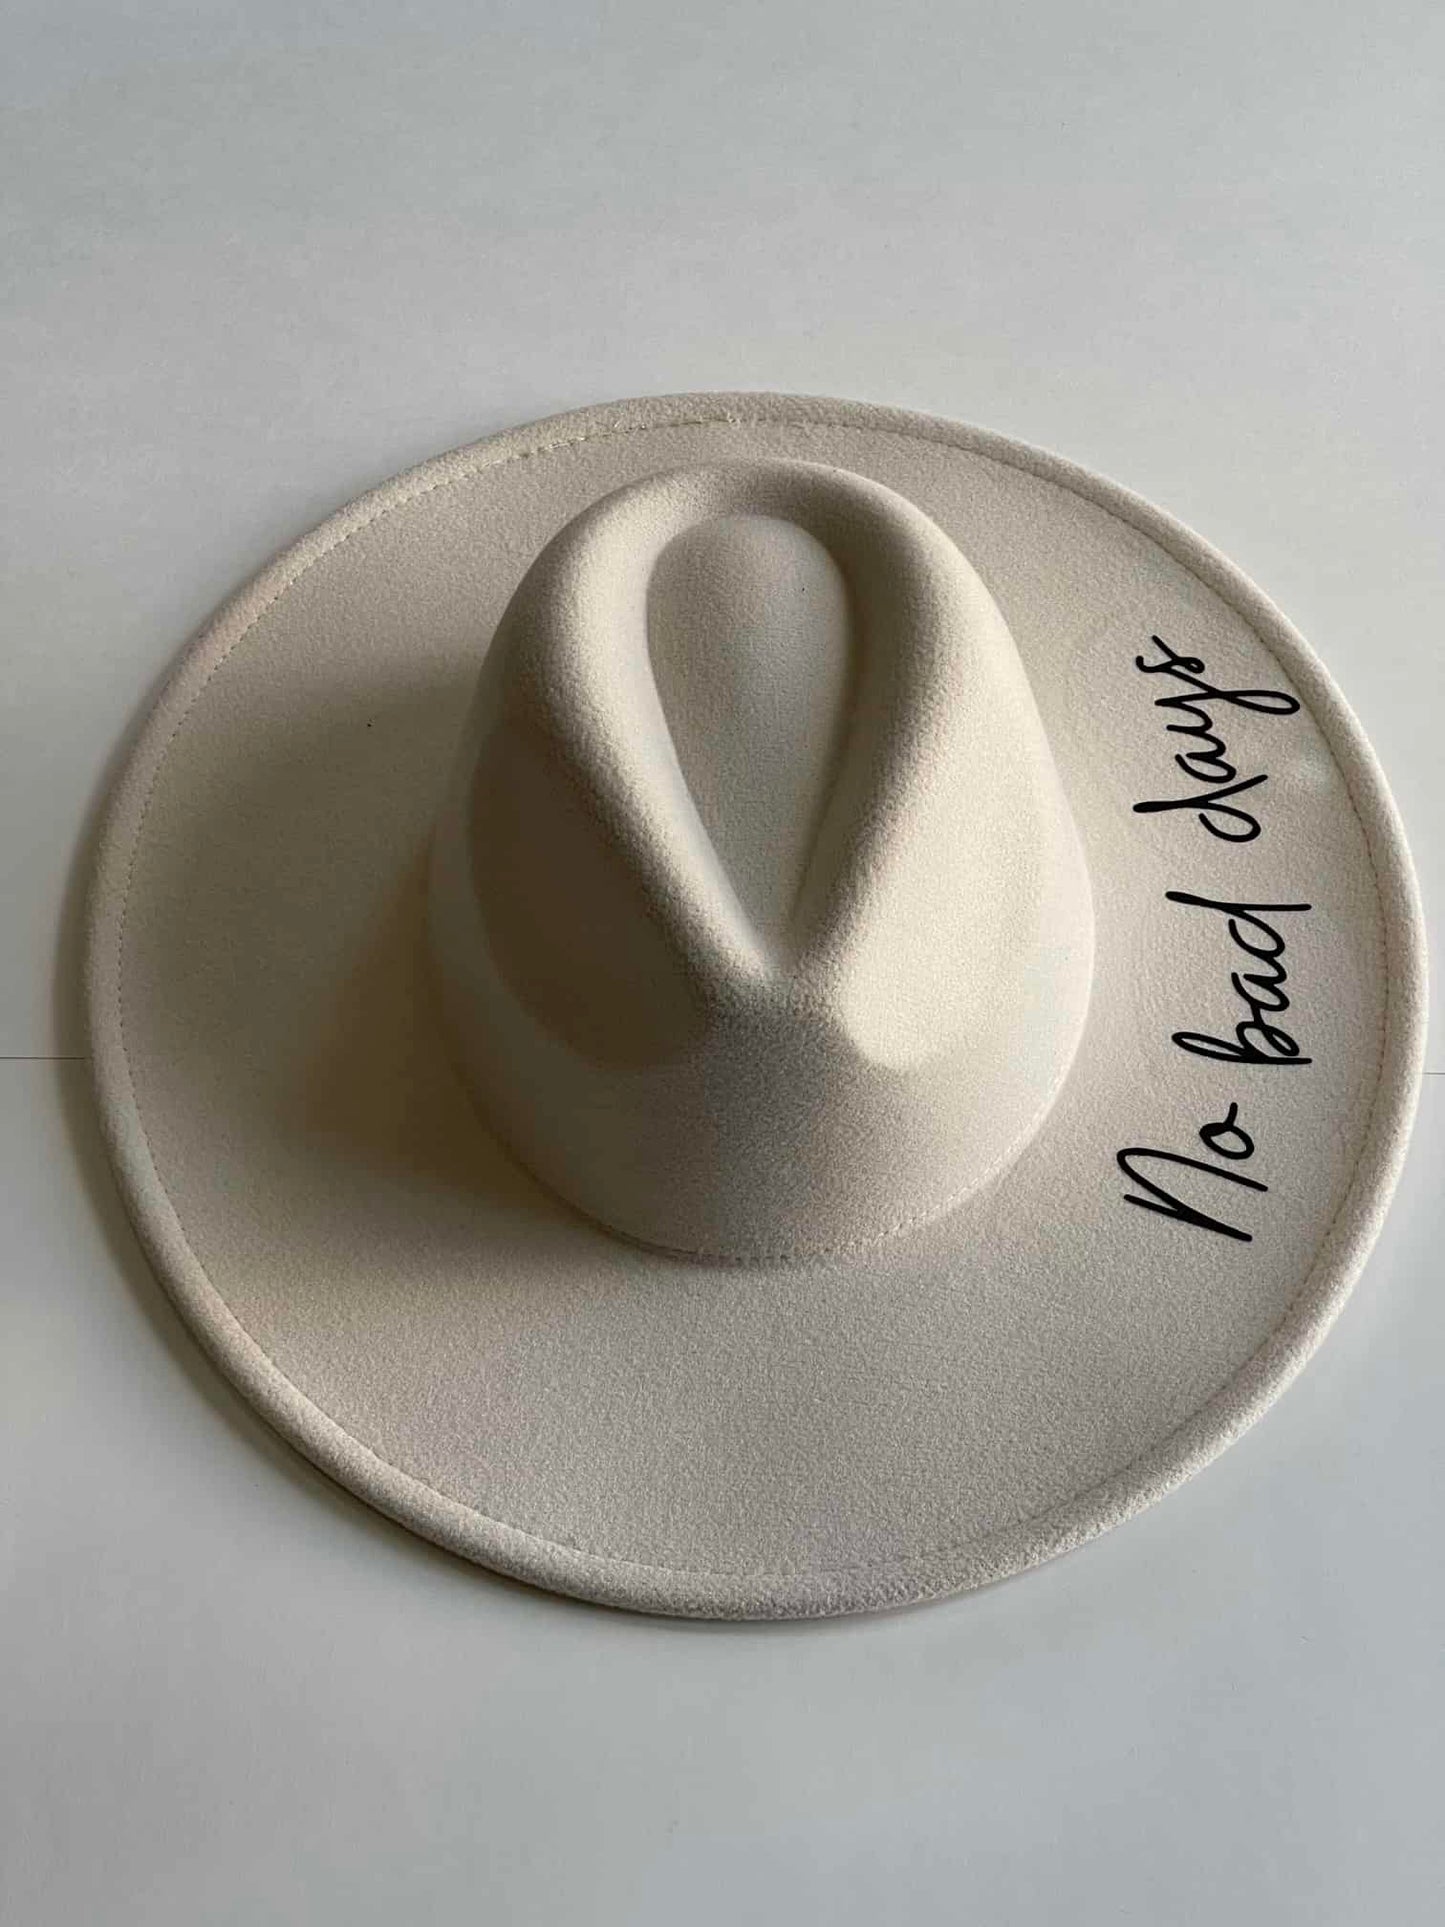 ¡Añade un toque de positivismo a tu look con este hermoso sombrero Fedora blanco con la frase "No bad days" en uno de los lados! 